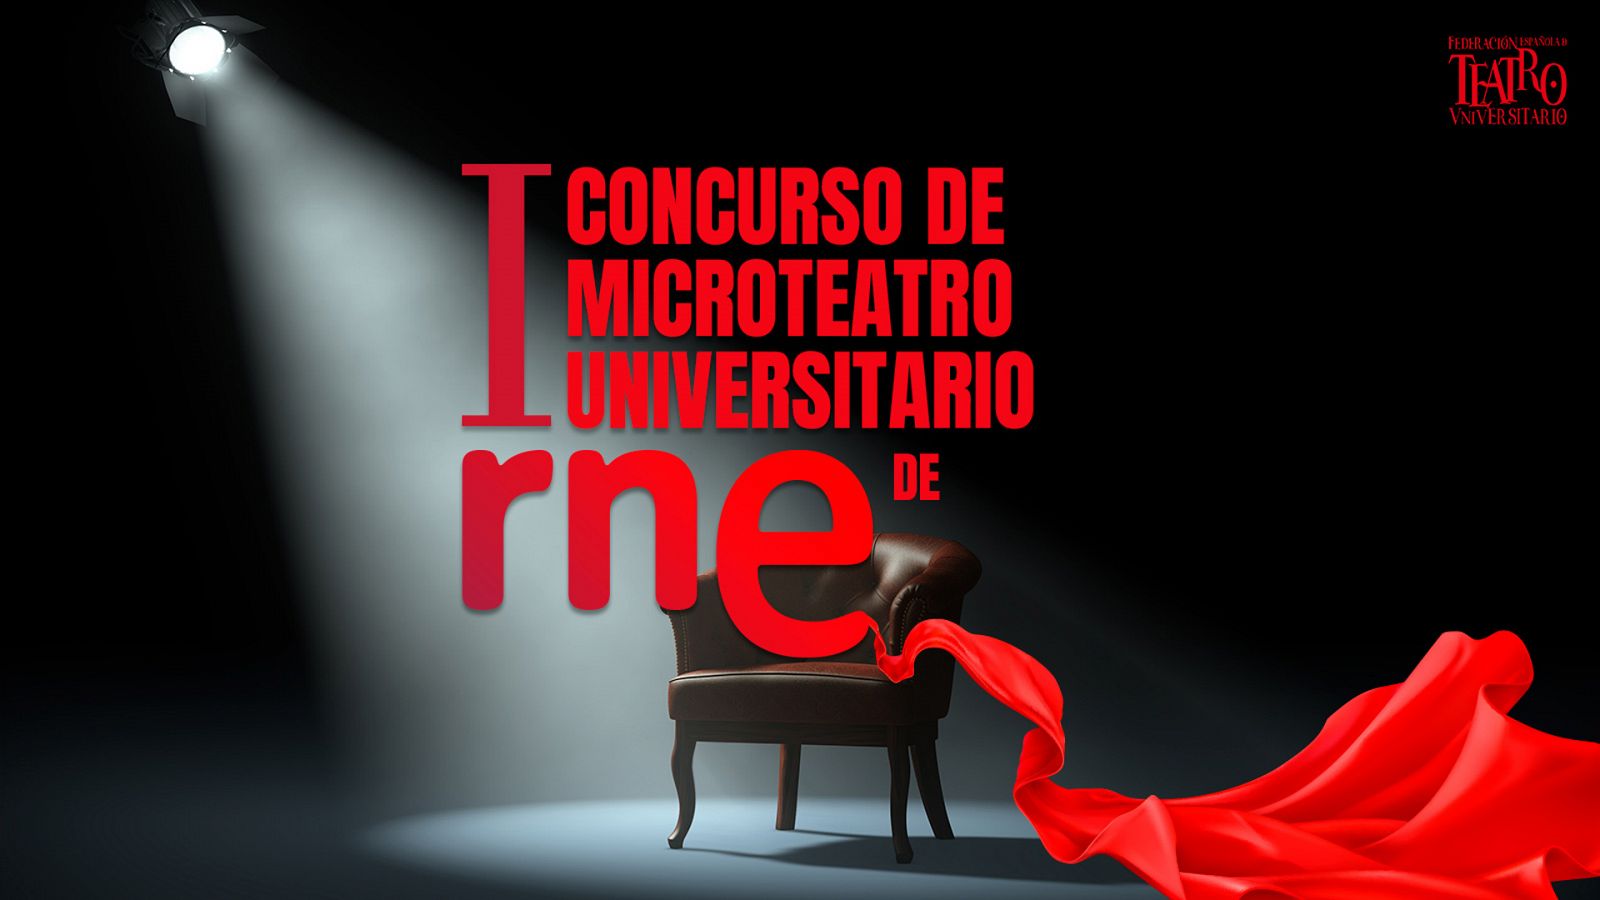 Cartel del I Concurso de Microteatro Universitario de RNE.